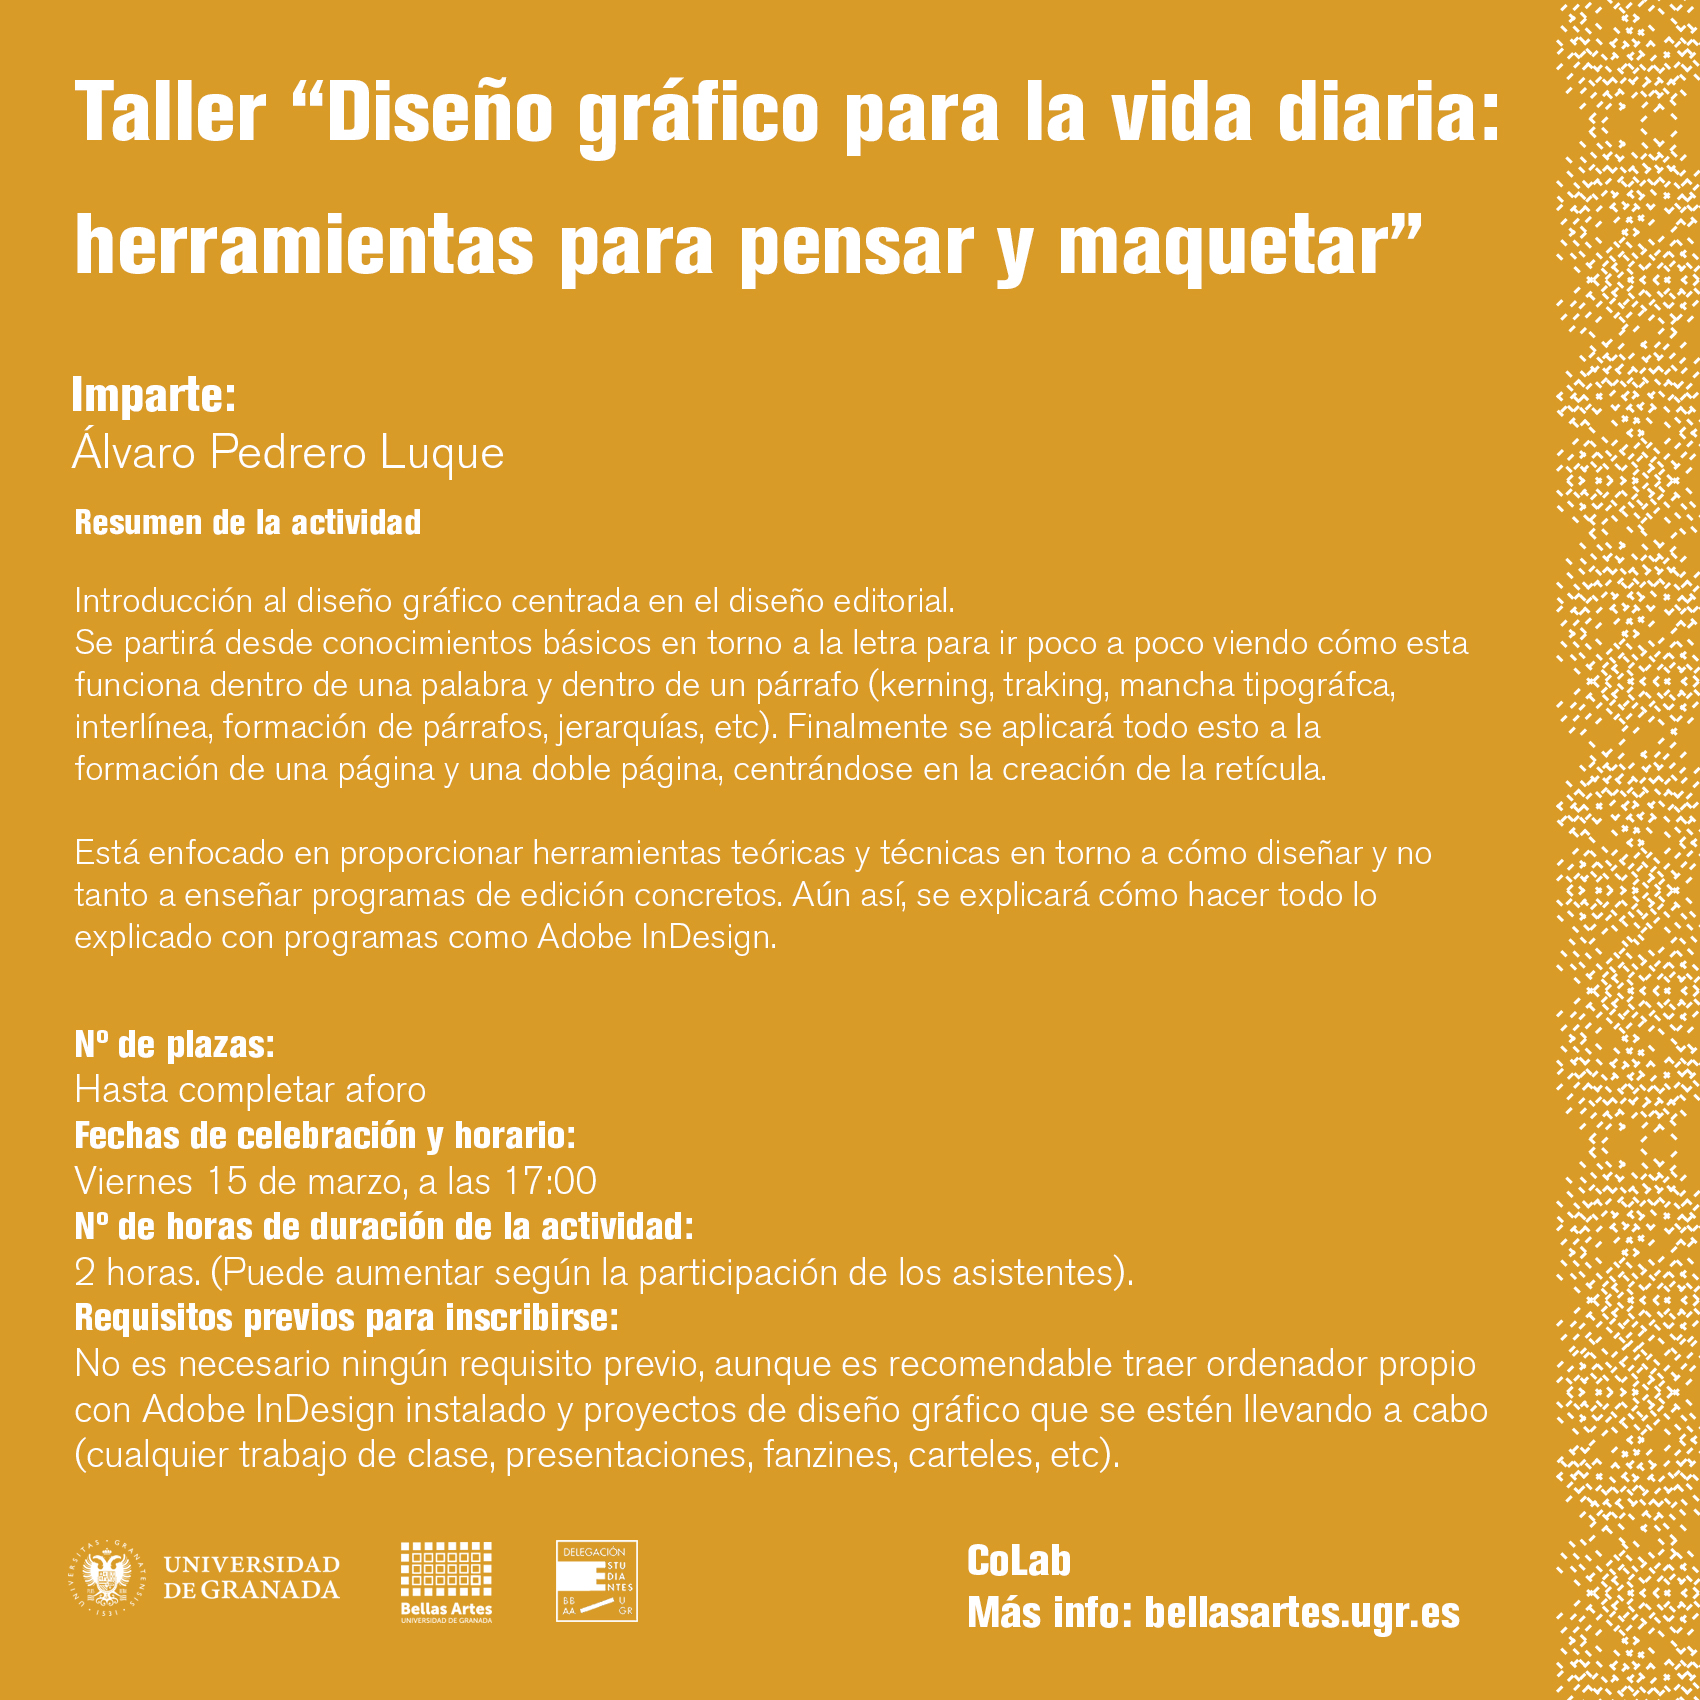 Imagen de portada de Taller “COLAB: Diseño gráfico para la vida diaria”. Imparte Álvaro Pedrero